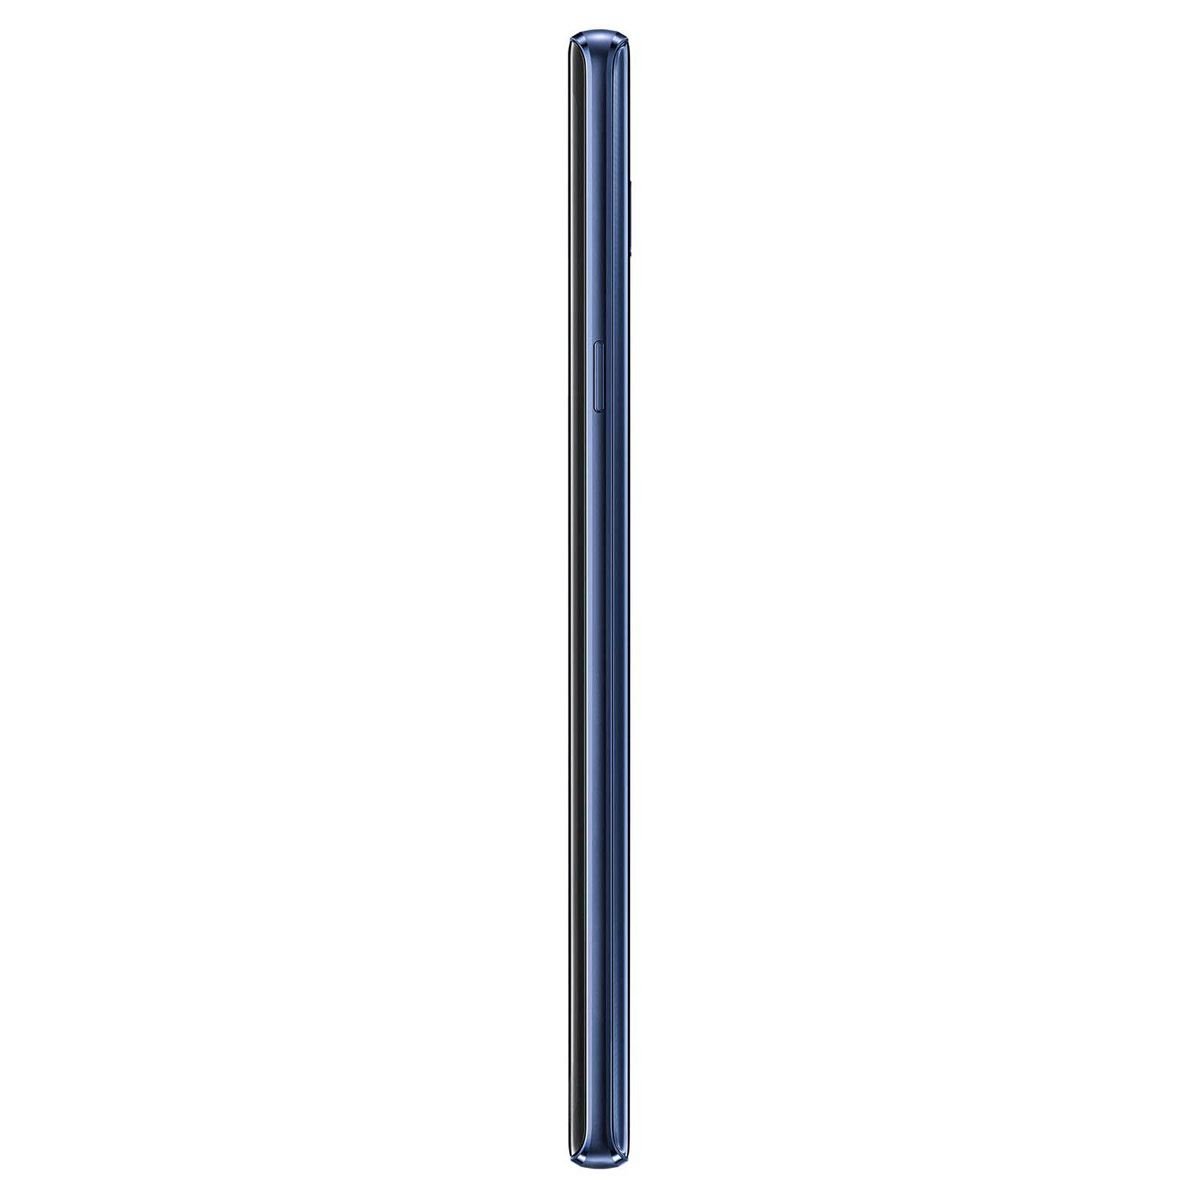 Samsung Galaxy Note 9 N9600 Color Azul R9 (Telcel)